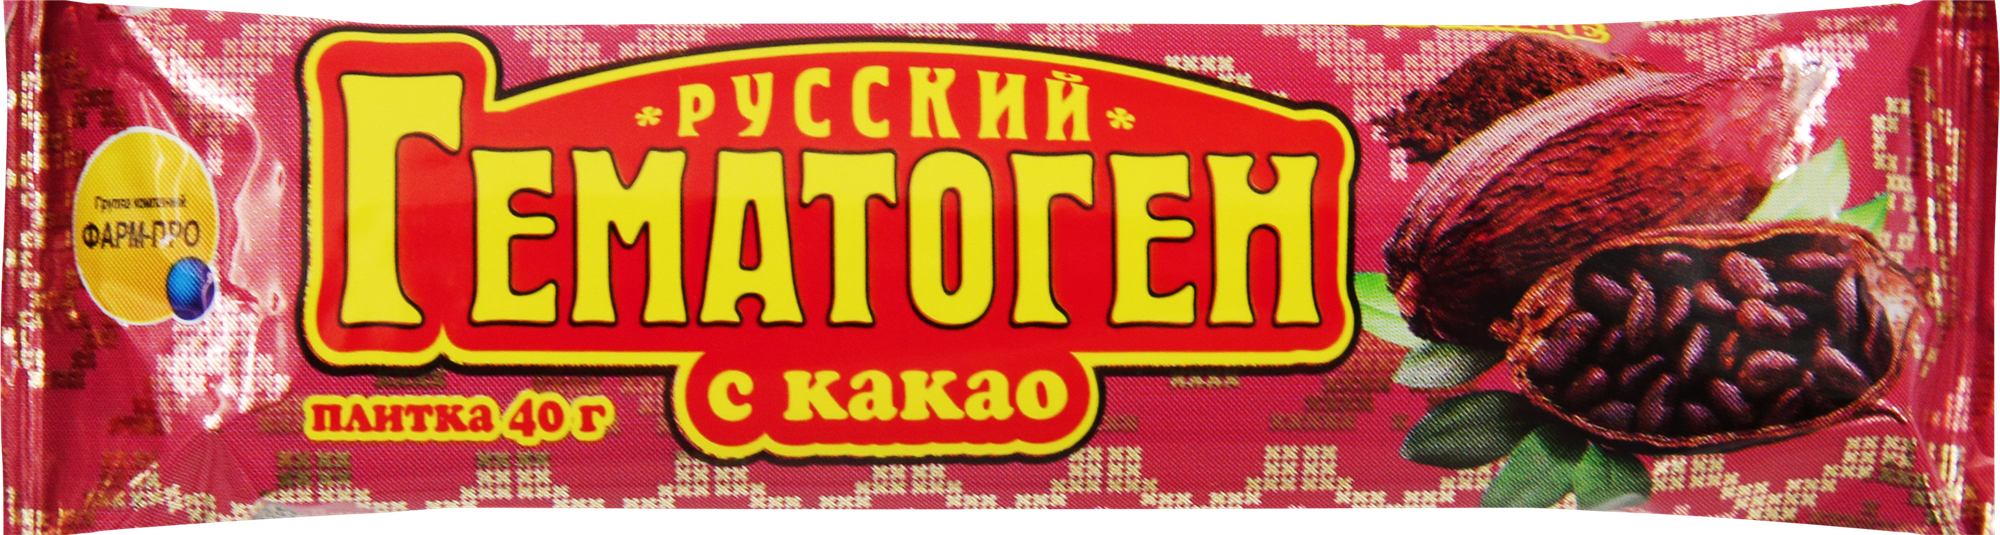 Гематоген русский с какао 40г